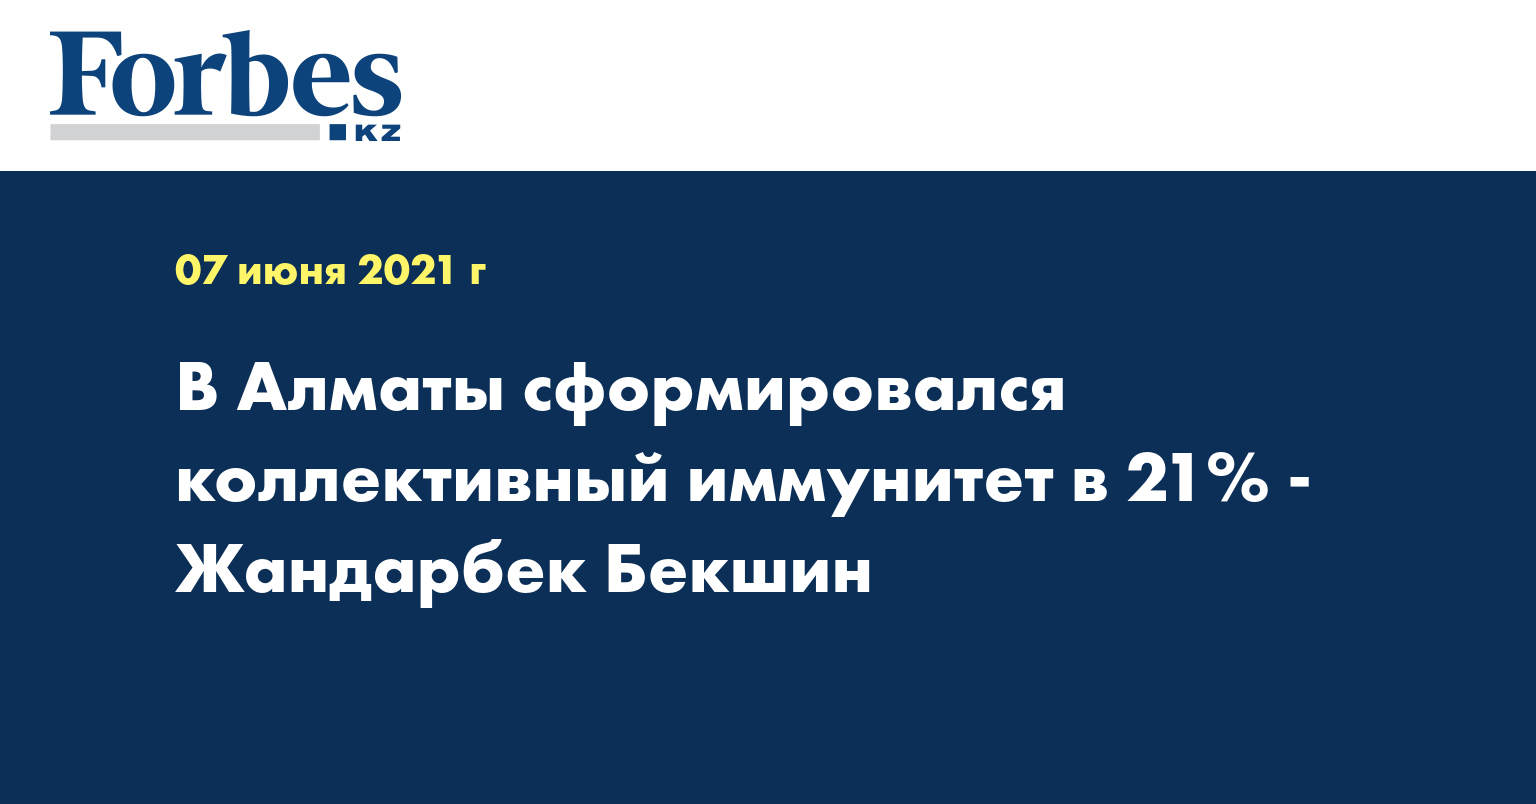  В Алматы сформировался коллективный иммунитет в 21% - Жандарбек Бекшин